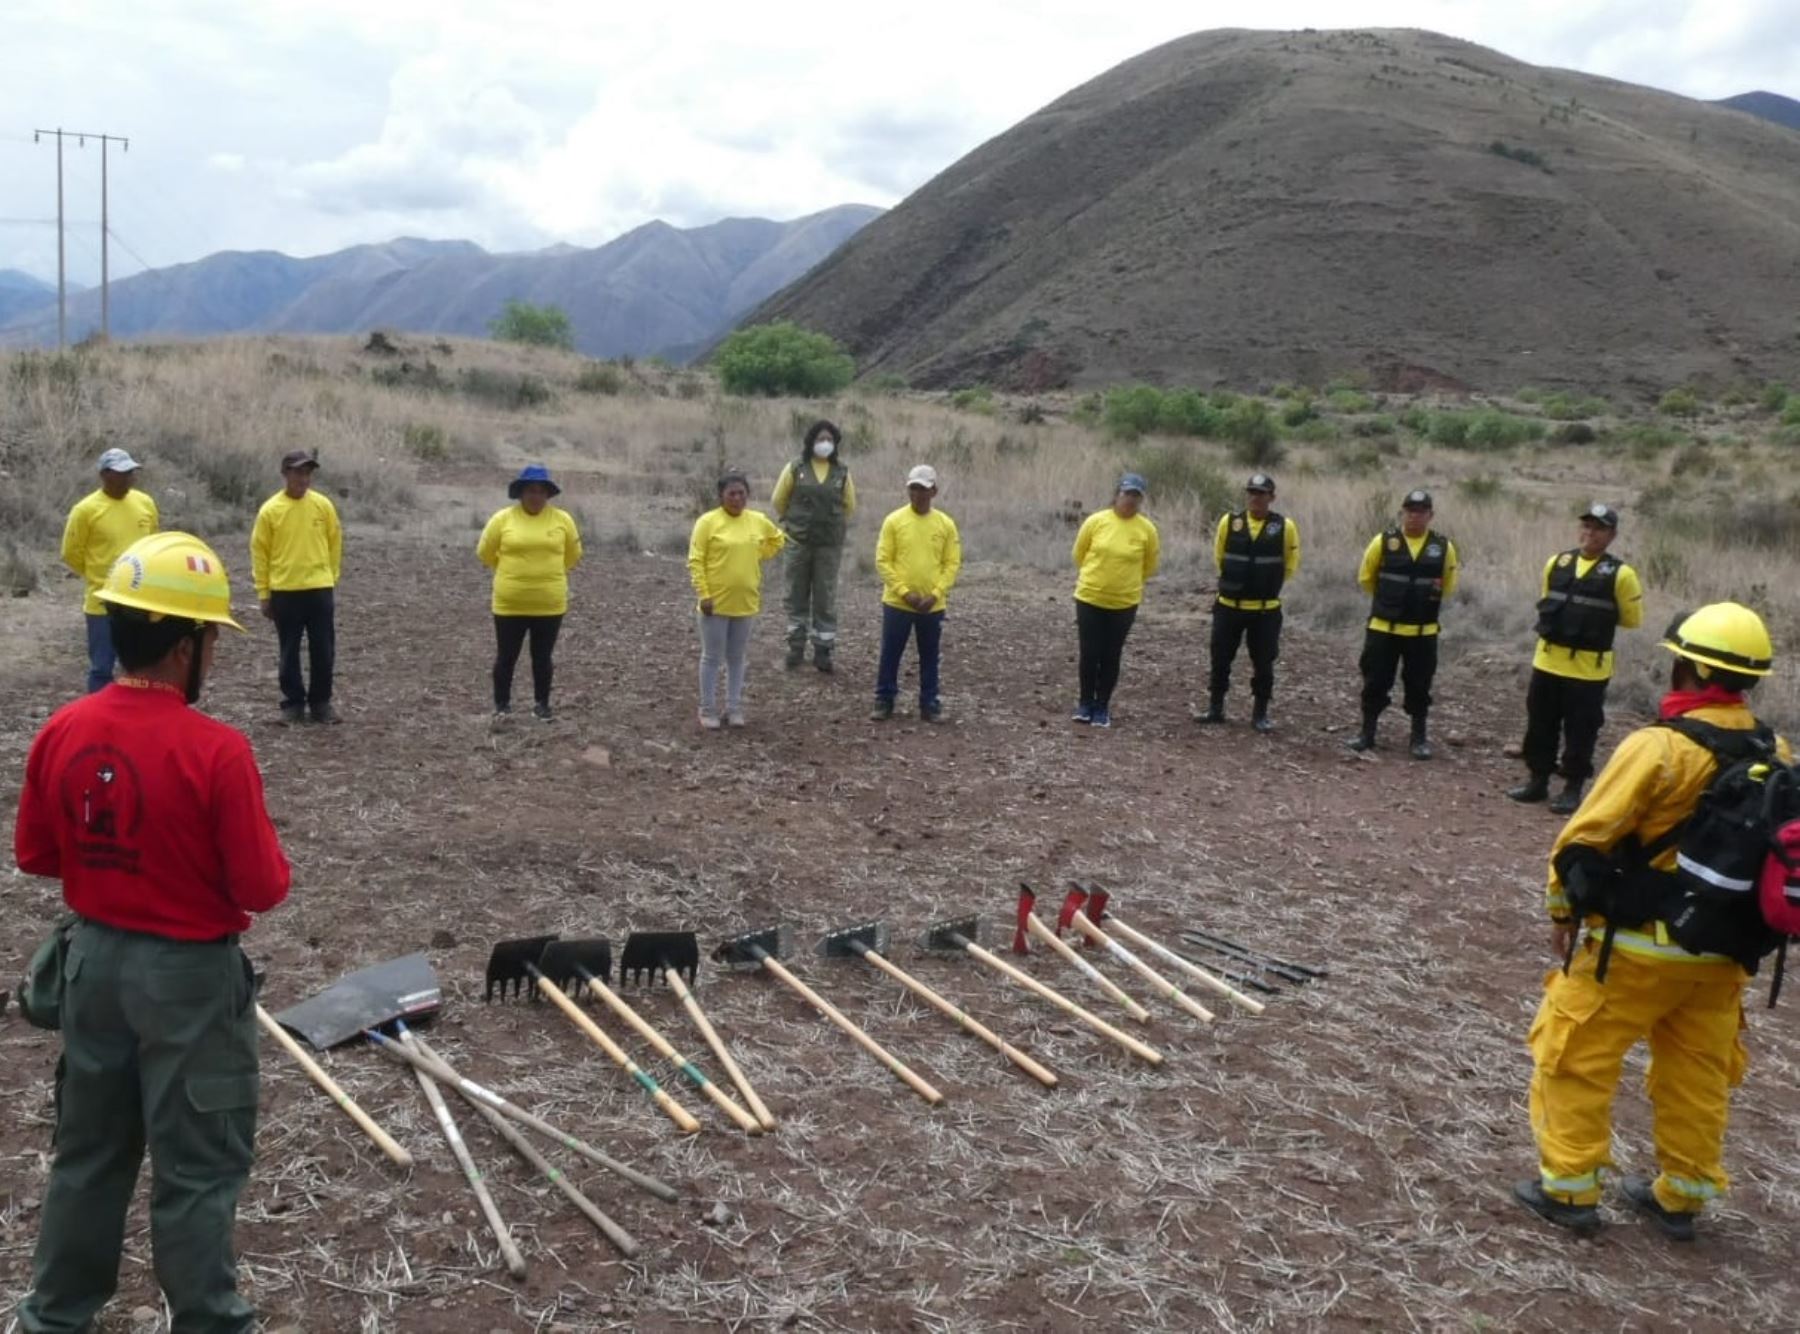 Guardaparques bomberos del Sernanp capacitan a pobladores del distrito de Andahuaylillas, en Cusco, en medidas de prevención de incendios forestales.